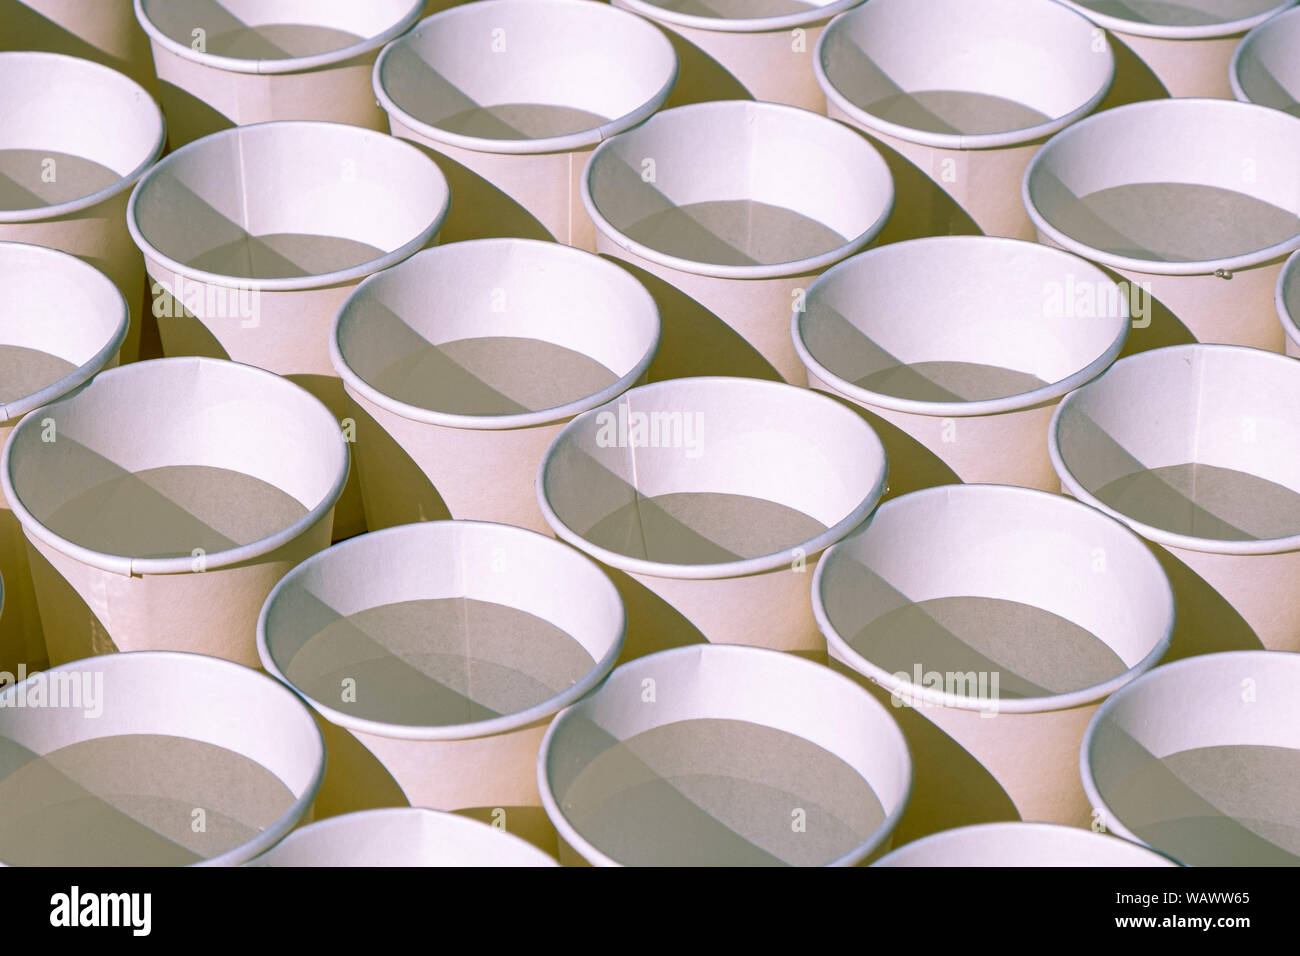 Righe di tazze monouso riempito con acqua con luce e ombra pattern Foto Stock